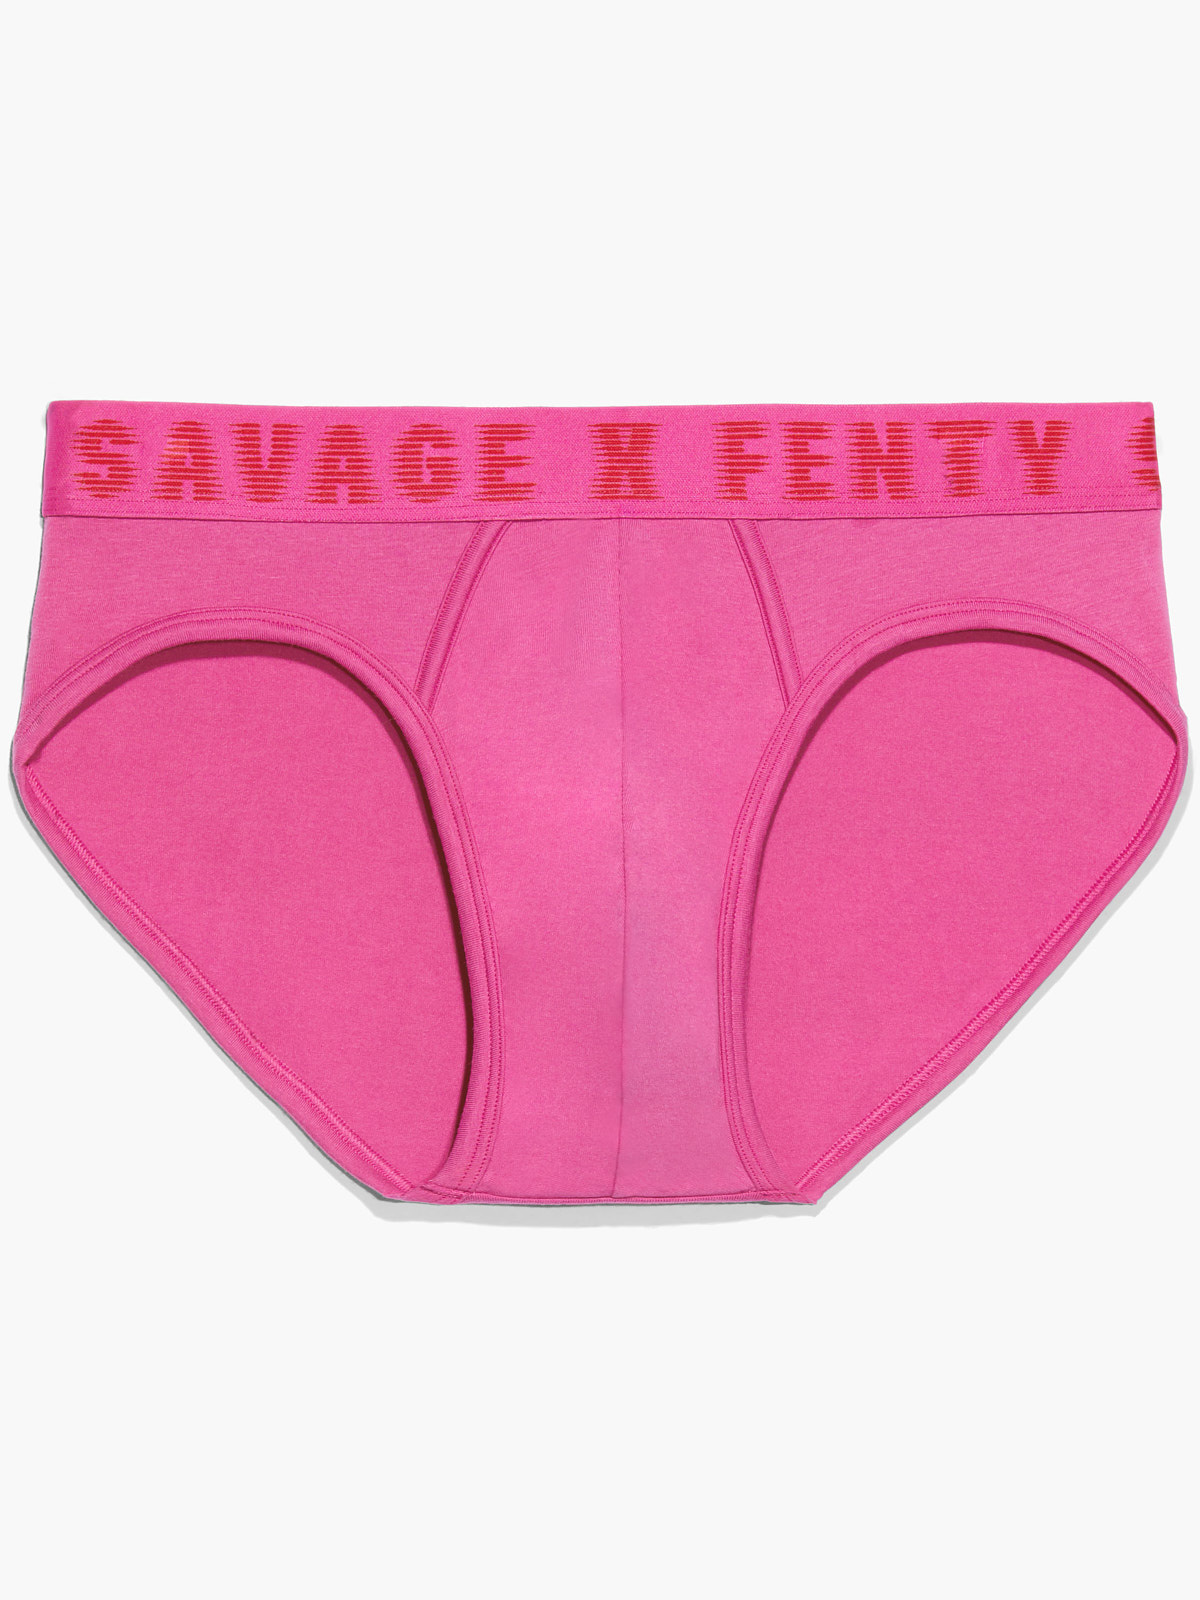 Savage X Briefs in Pink | SAVAGE X FENTY France